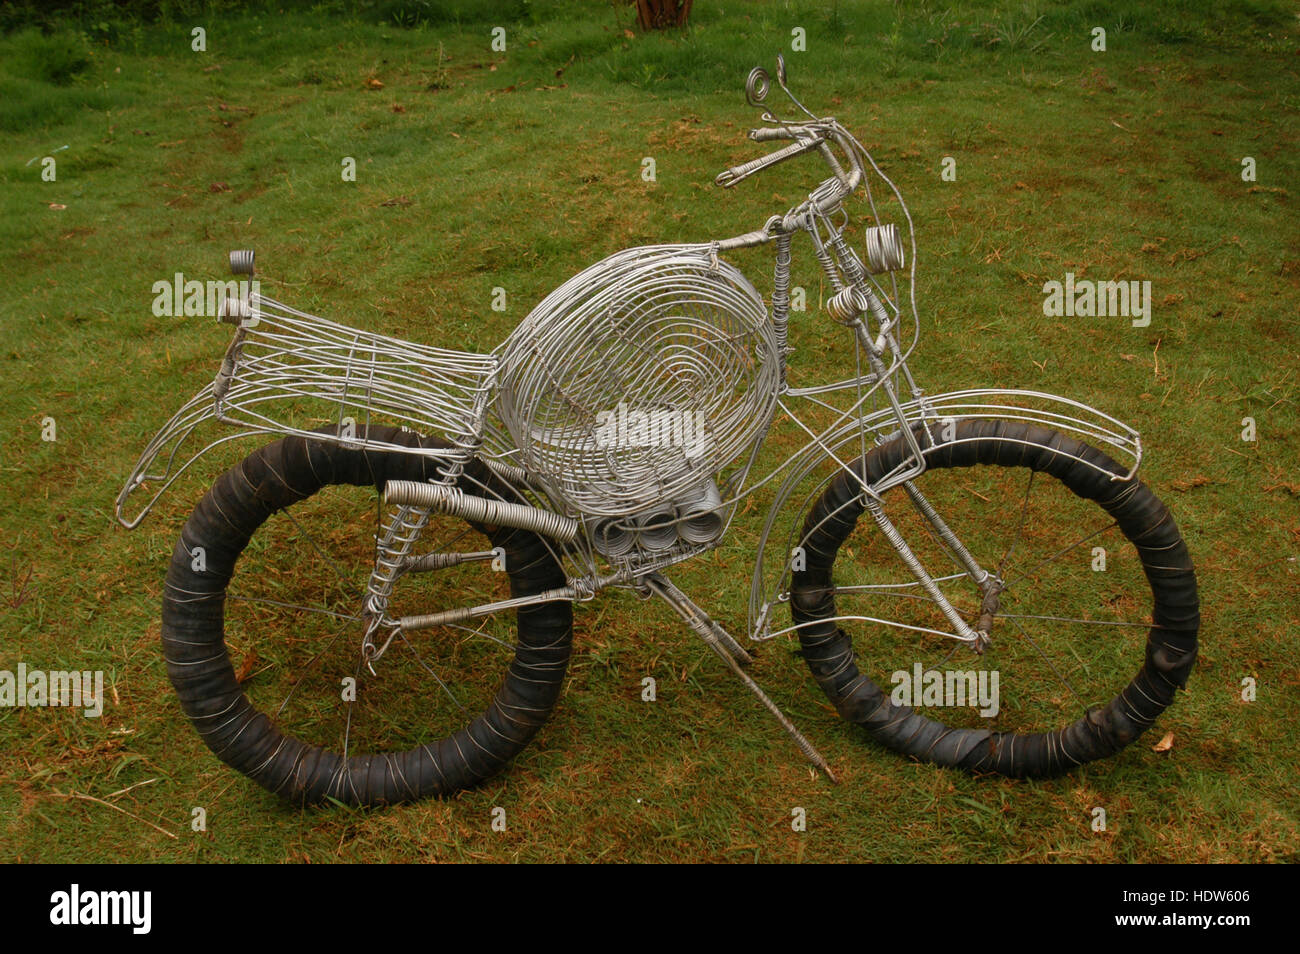 Motorrad Spielzeug kunstvoll gebogen mit Metalldraht, Karatu, Tansania Stockfoto